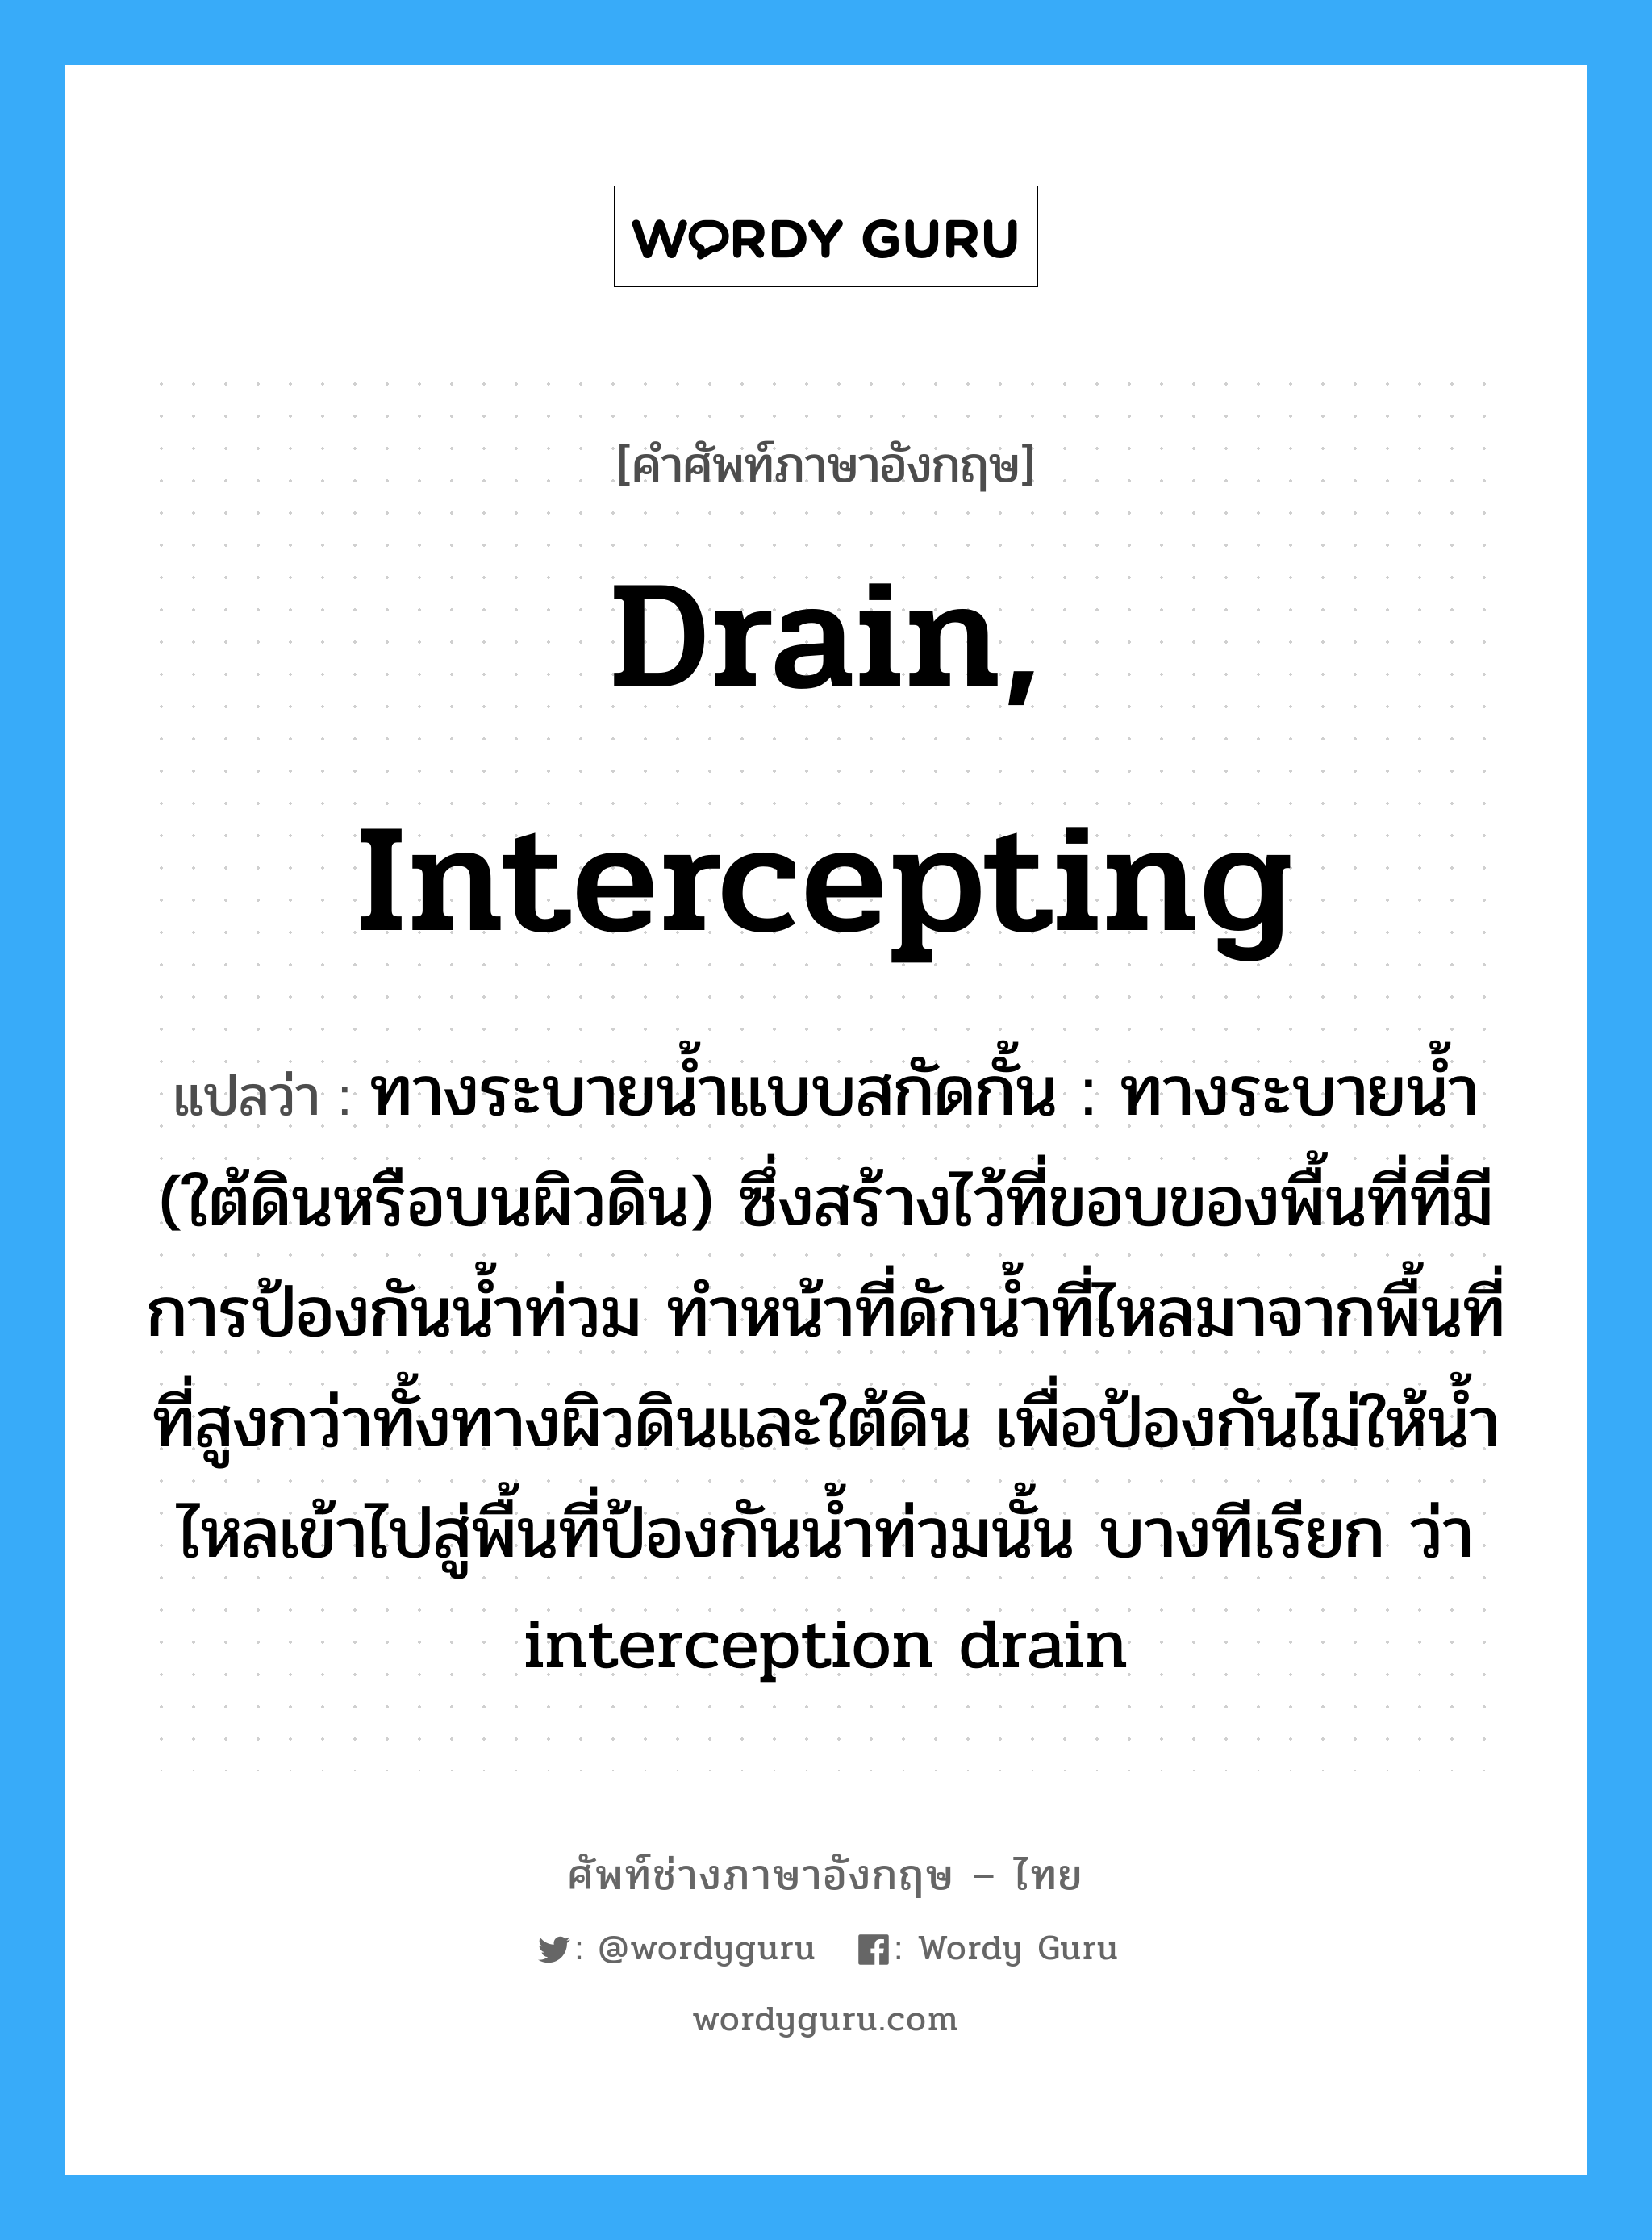 drain, intercepting แปลว่า?, คำศัพท์ช่างภาษาอังกฤษ - ไทย drain, intercepting คำศัพท์ภาษาอังกฤษ drain, intercepting แปลว่า ทางระบายน้ำแบบสกัดกั้น : ทางระบายน้ำ (ใต้ดินหรือบนผิวดิน) ซึ่งสร้างไว้ที่ขอบของพื้นที่ที่มีการป้องกันน้ำท่วม ทำหน้าที่ดักน้ำที่ไหลมาจากพื้นที่ที่สูงกว่าทั้งทางผิวดินและใต้ดิน เพื่อป้องกันไม่ให้น้ำไหลเข้าไปสู่พื้นที่ป้องกันน้ำท่วมนั้น บางทีเรียก ว่า interception drain